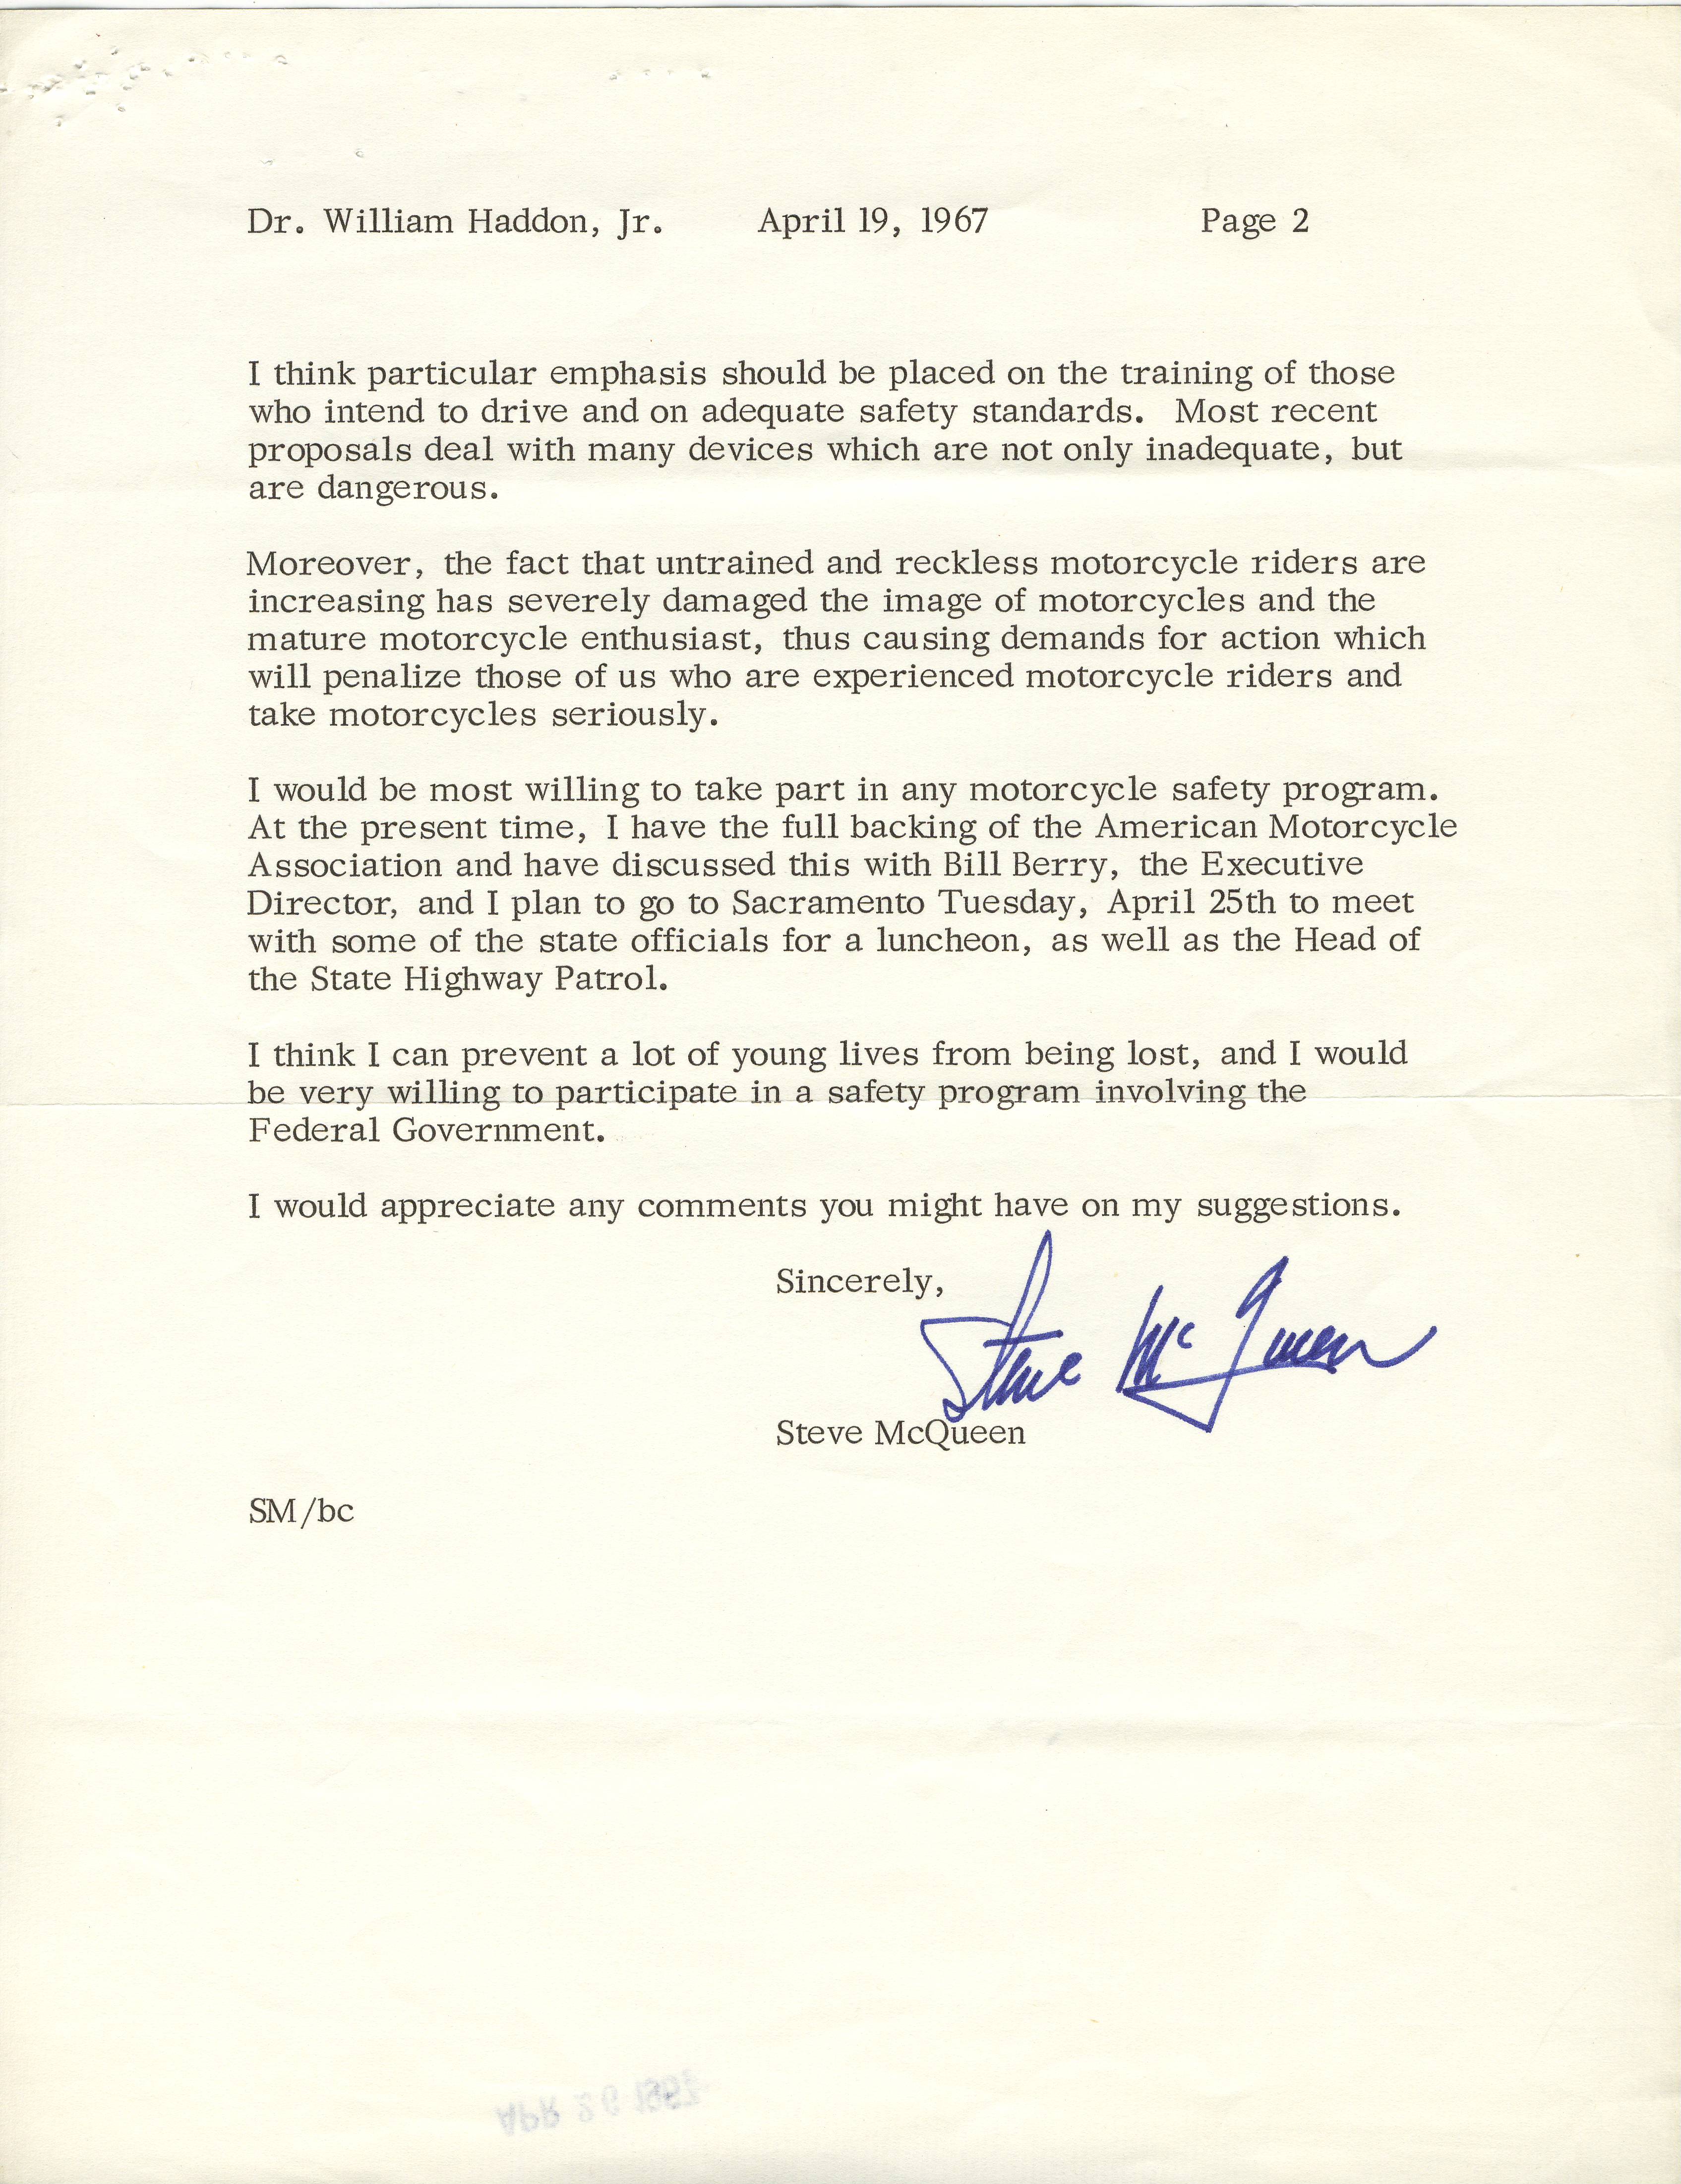 Steve McQueen Letter 2